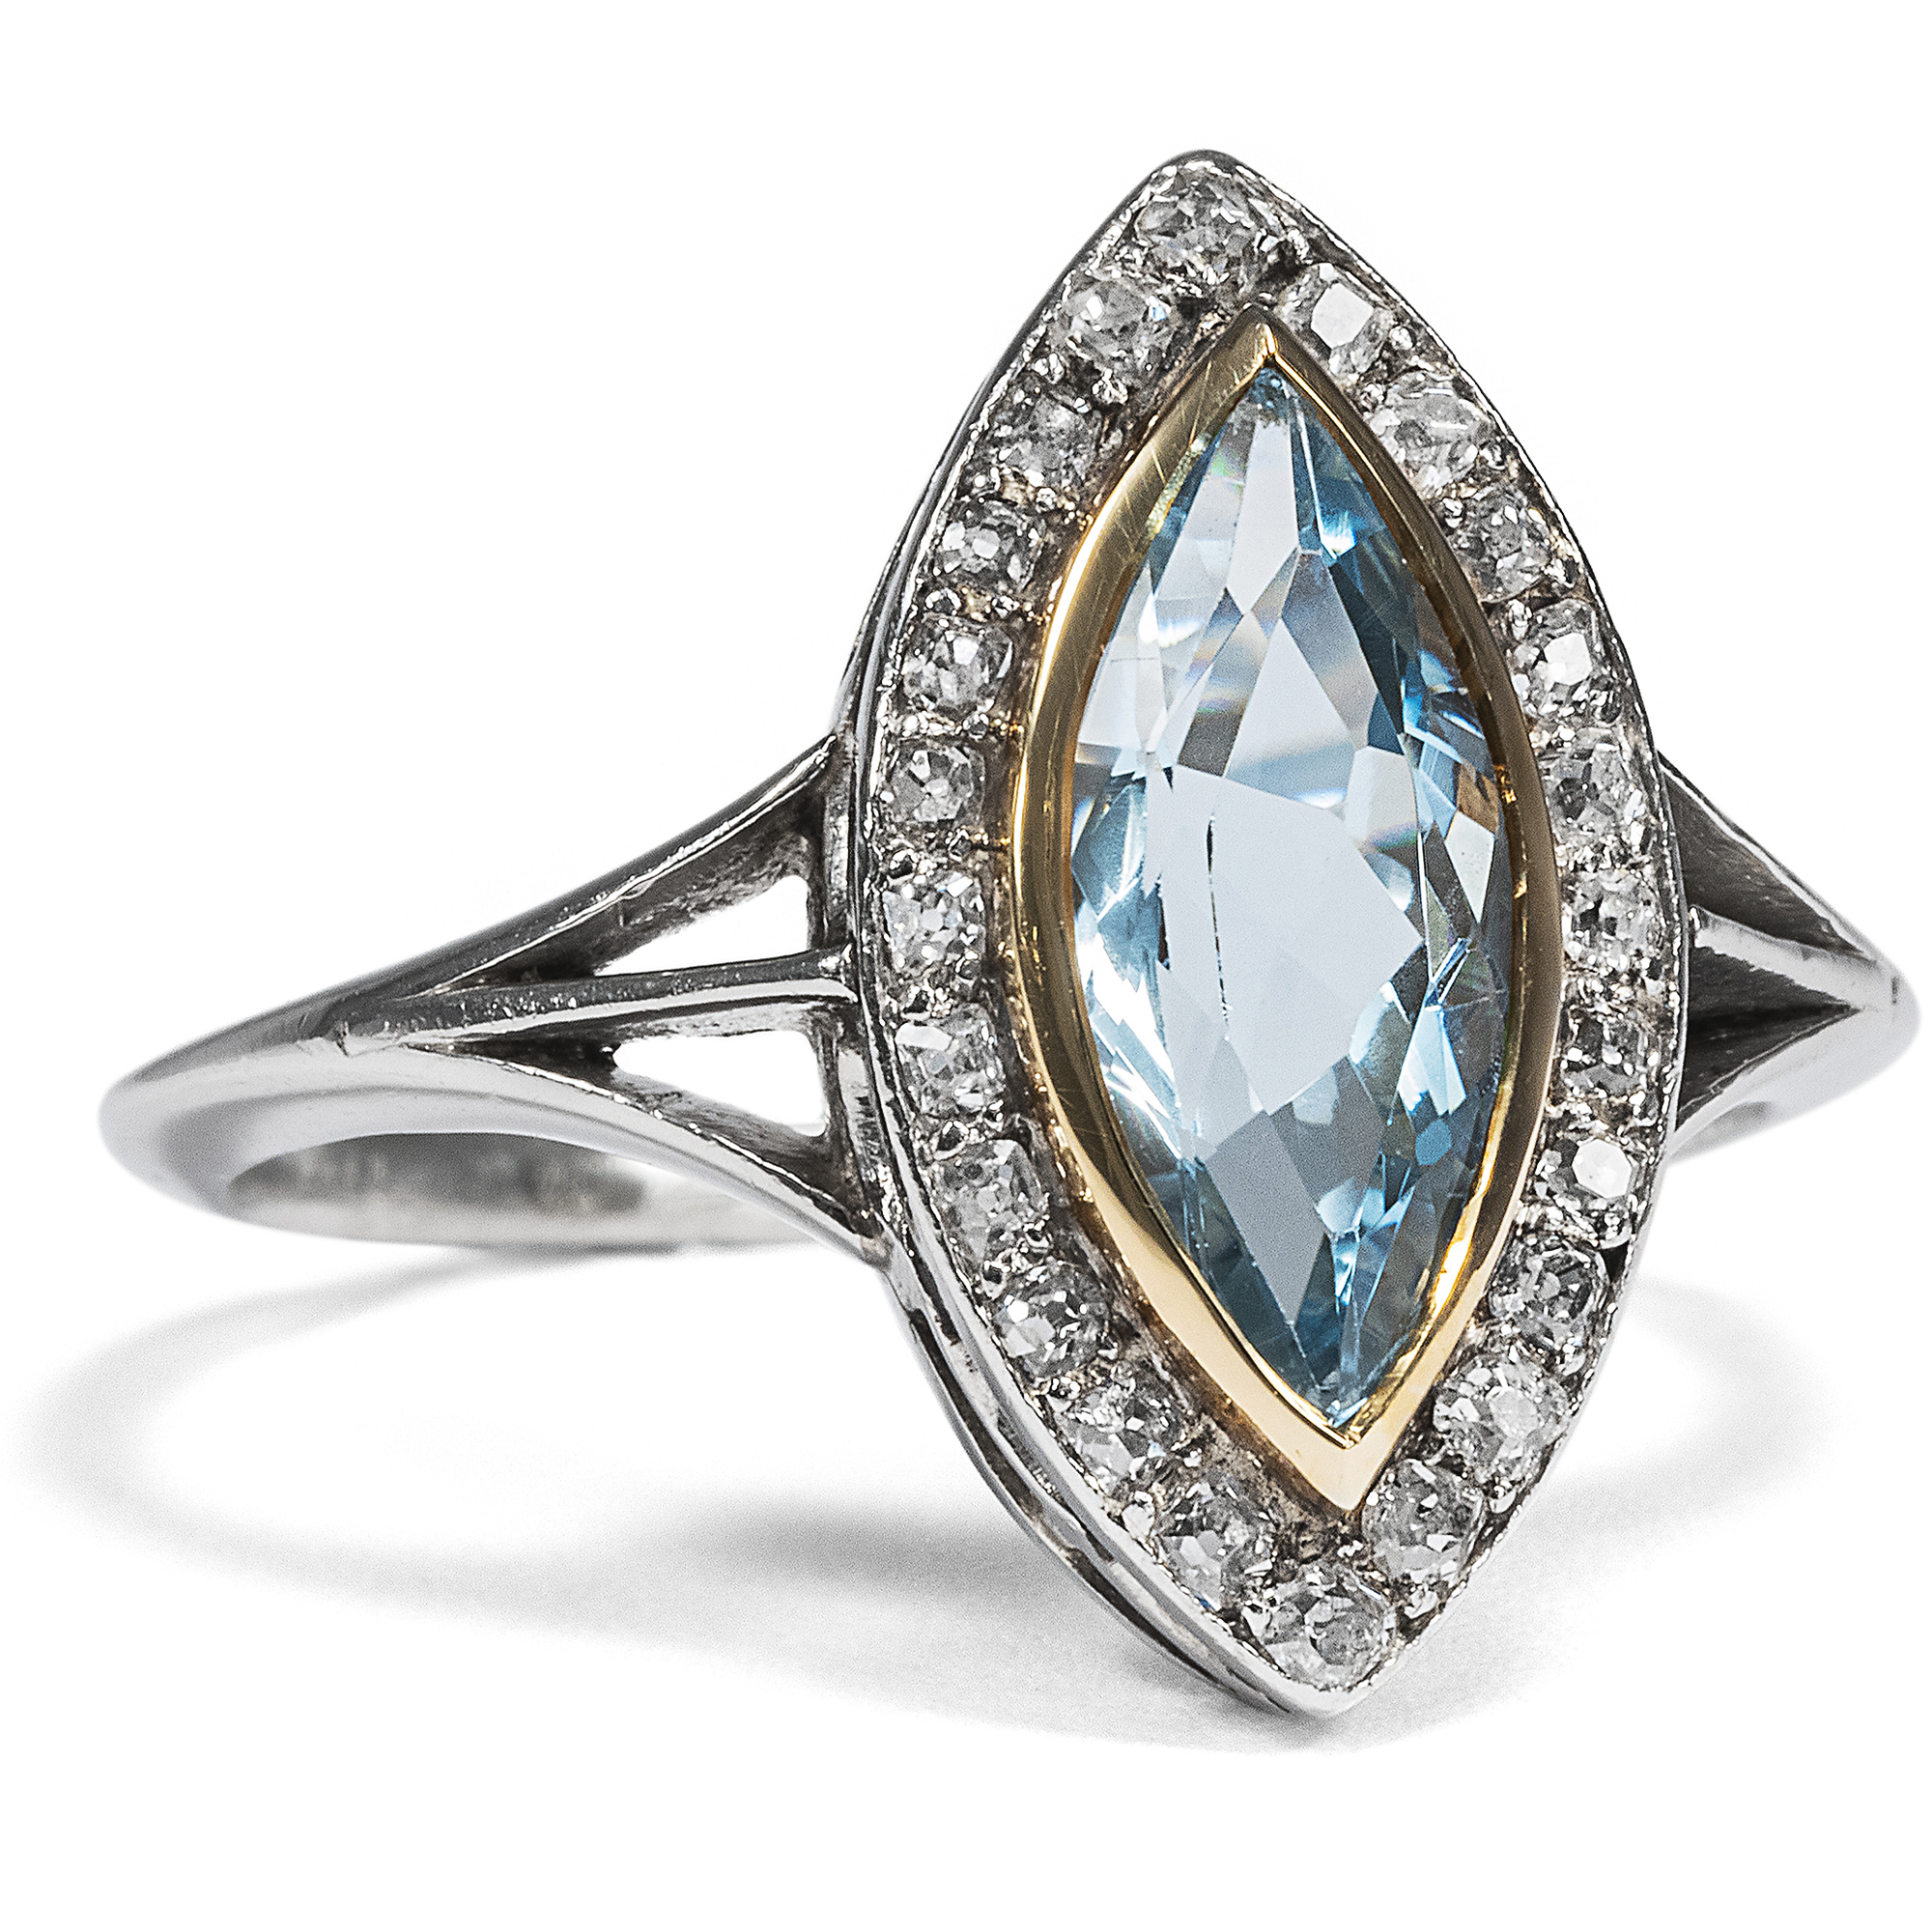 Antique Marquise Ring with Aquamarine & Diamonds in Platinum, ca. 1910